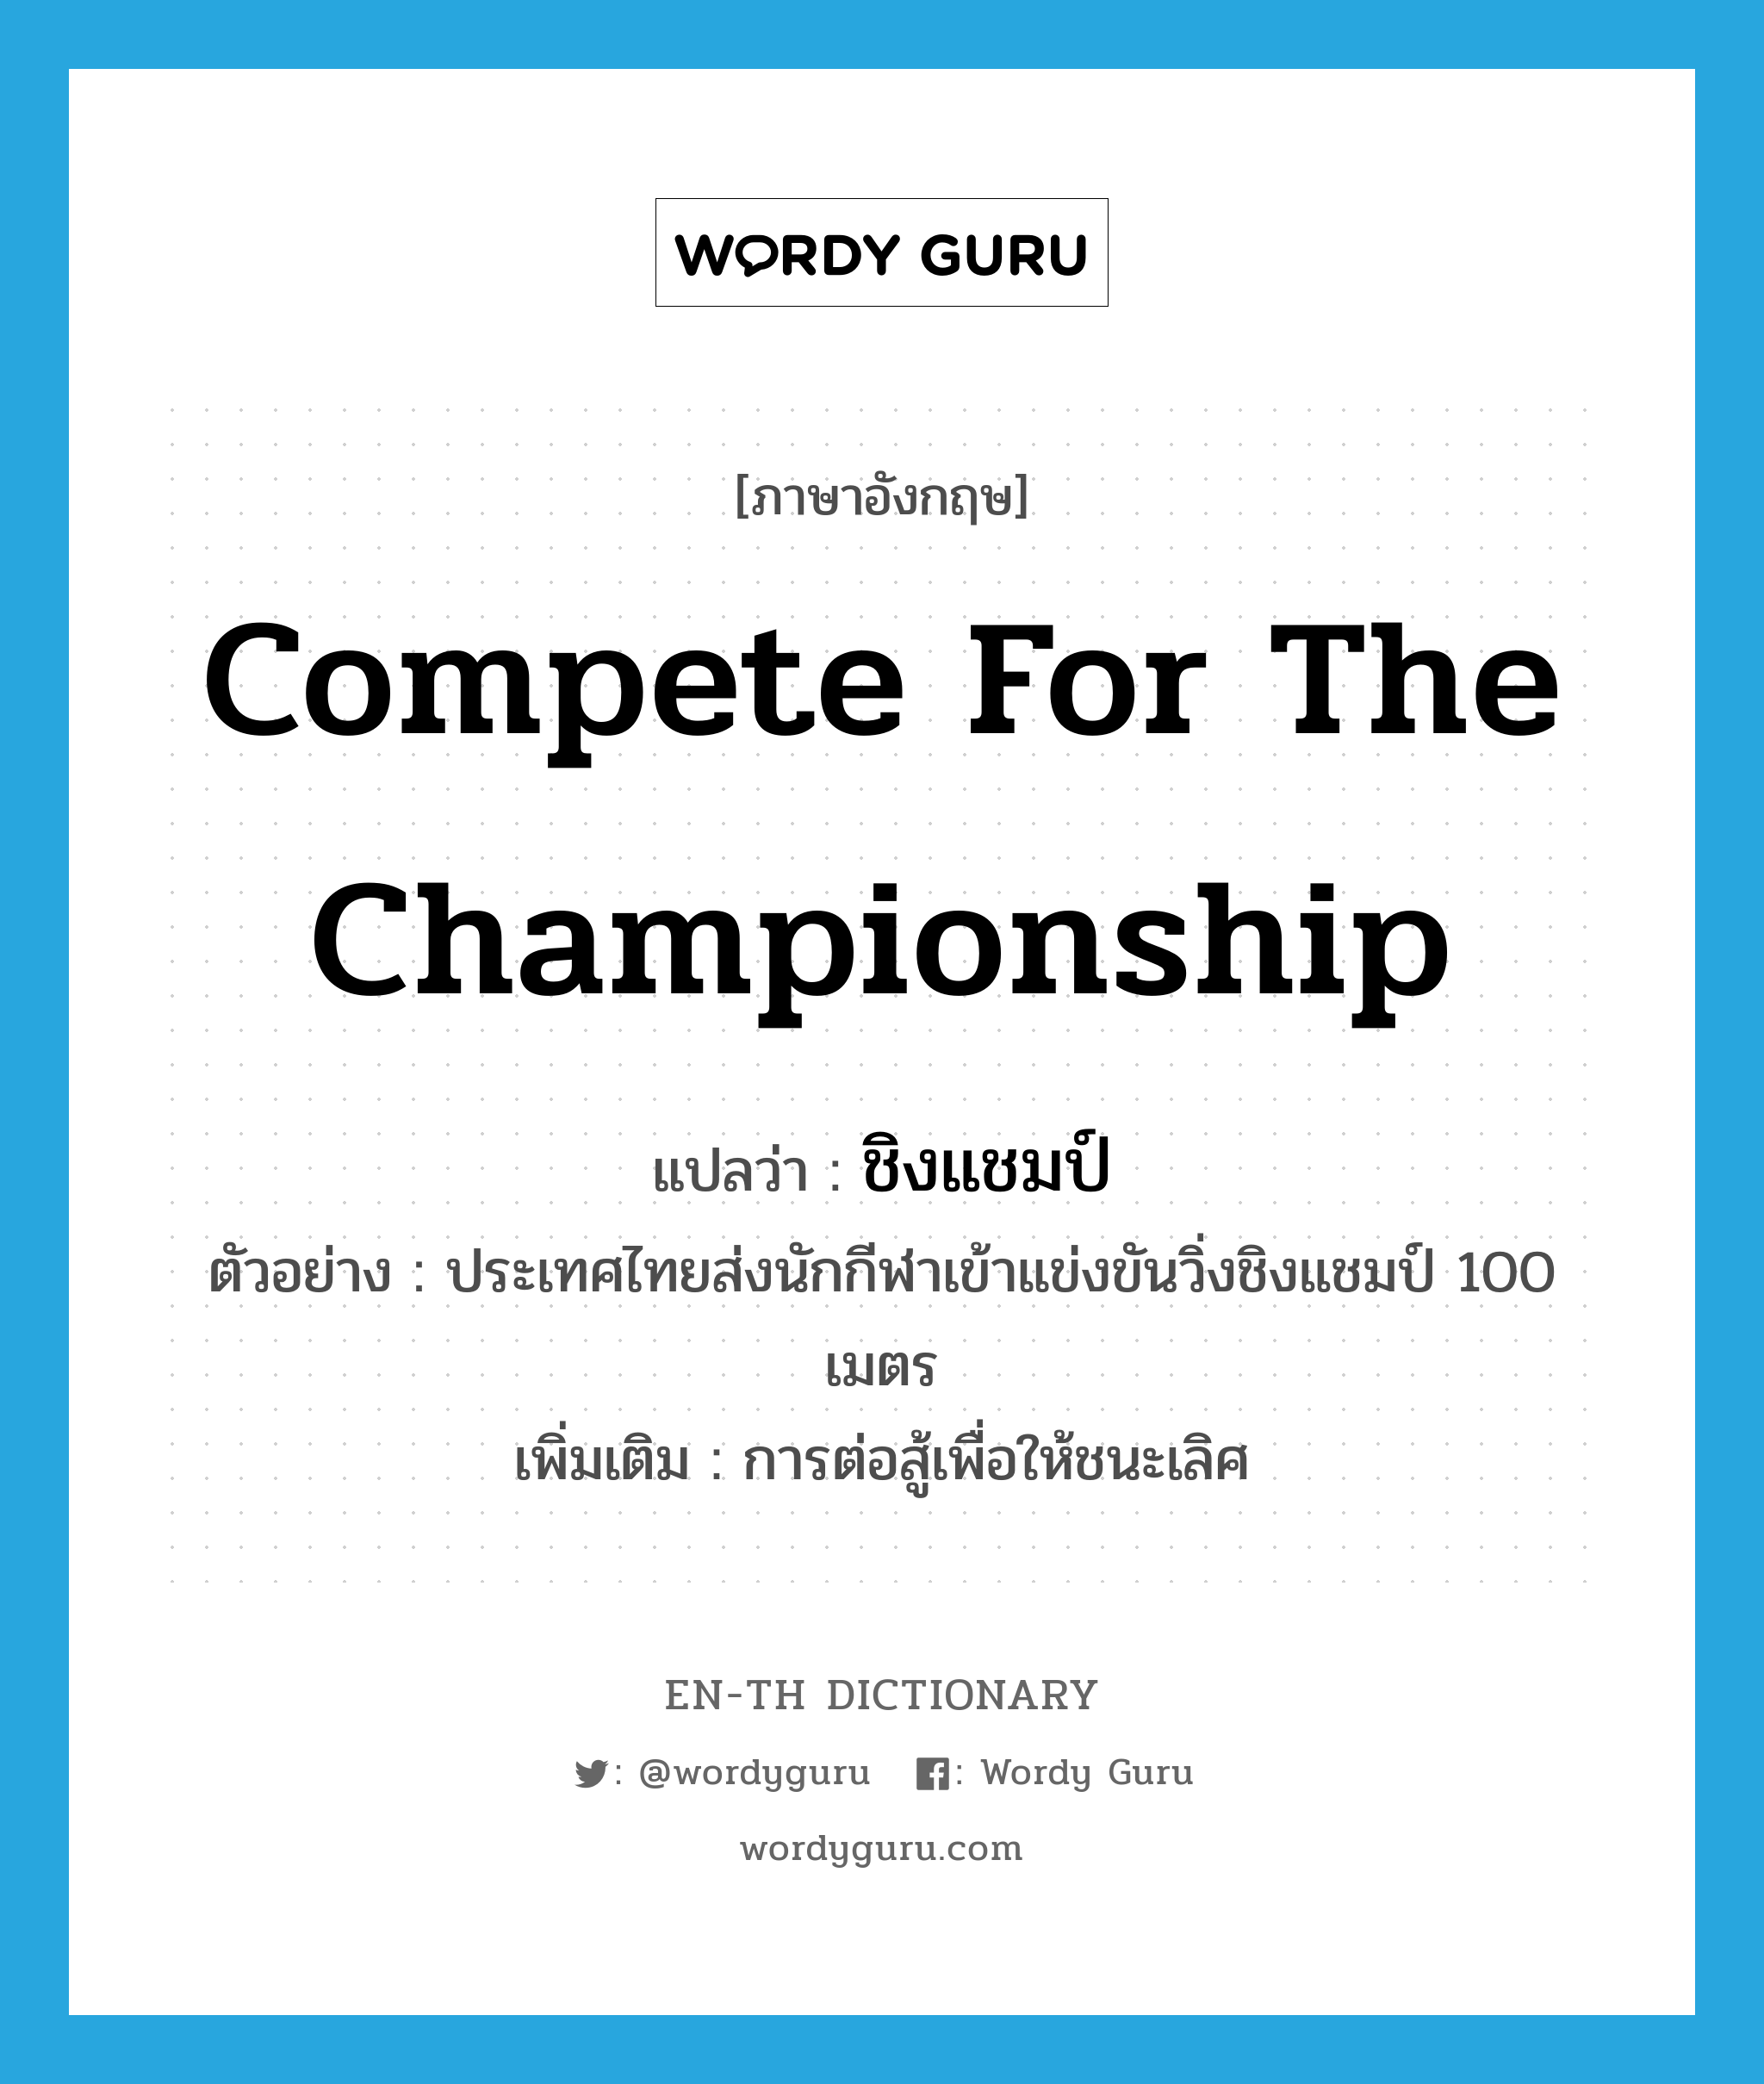 compete for the championship แปลว่า?, คำศัพท์ภาษาอังกฤษ compete for the championship แปลว่า ชิงแชมป์ ประเภท V ตัวอย่าง ประเทศไทยส่งนักกีฬาเข้าแข่งขันวิ่งชิงแชมป์ 100 เมตร เพิ่มเติม การต่อสู้เพื่อให้ชนะเลิศ หมวด V